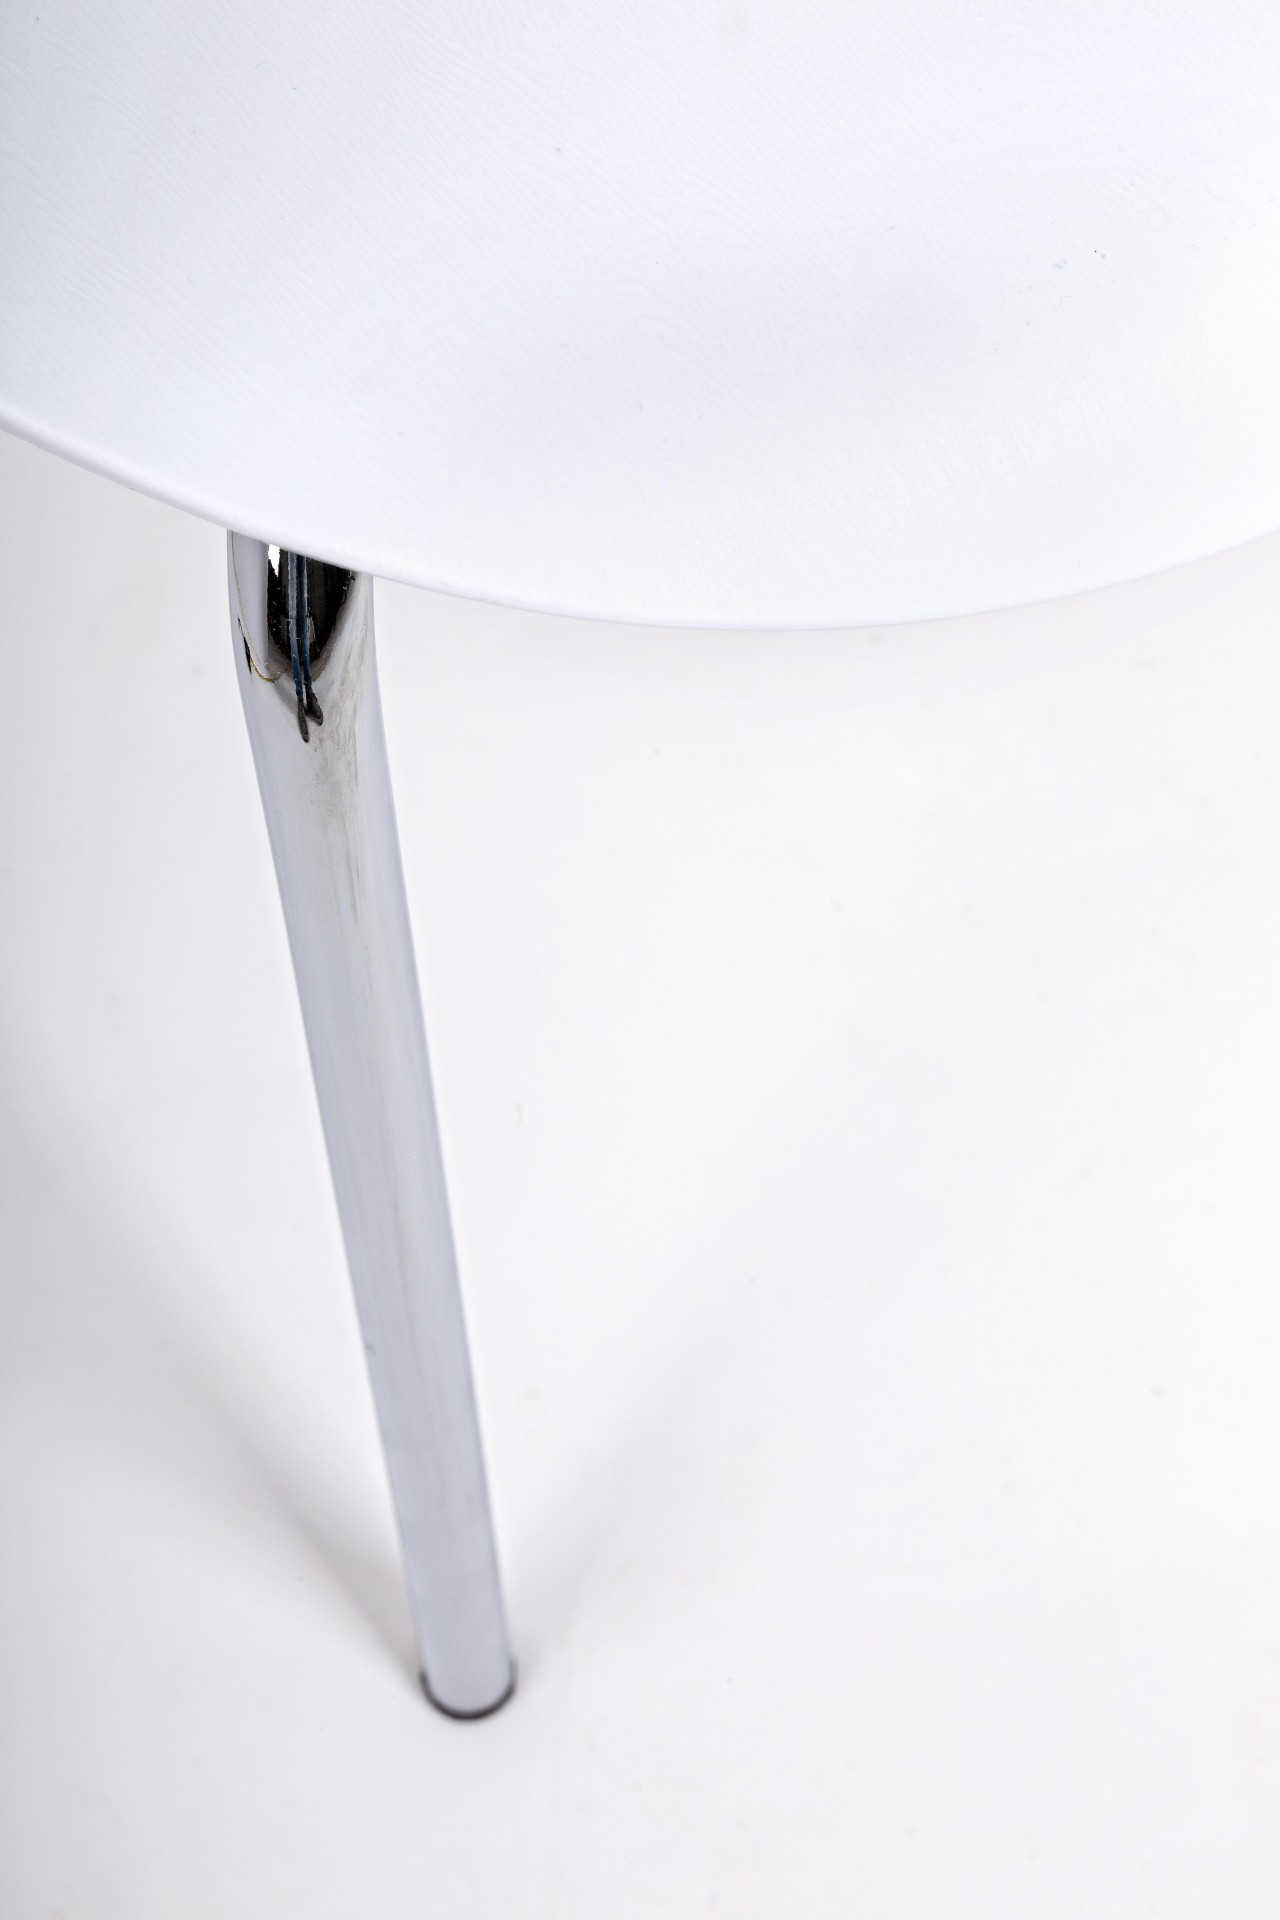 Der Stuhl Tessa überzeugt mit seinem modernem Design. Gefertigt wurde der Stuhl aus Kunststoff, welcher einen weißen Farbton besitzt. Das Gestell ist aus Metall und ist in einer silbernen Farbe. Die Sitzhöhe beträgt 45 cm.